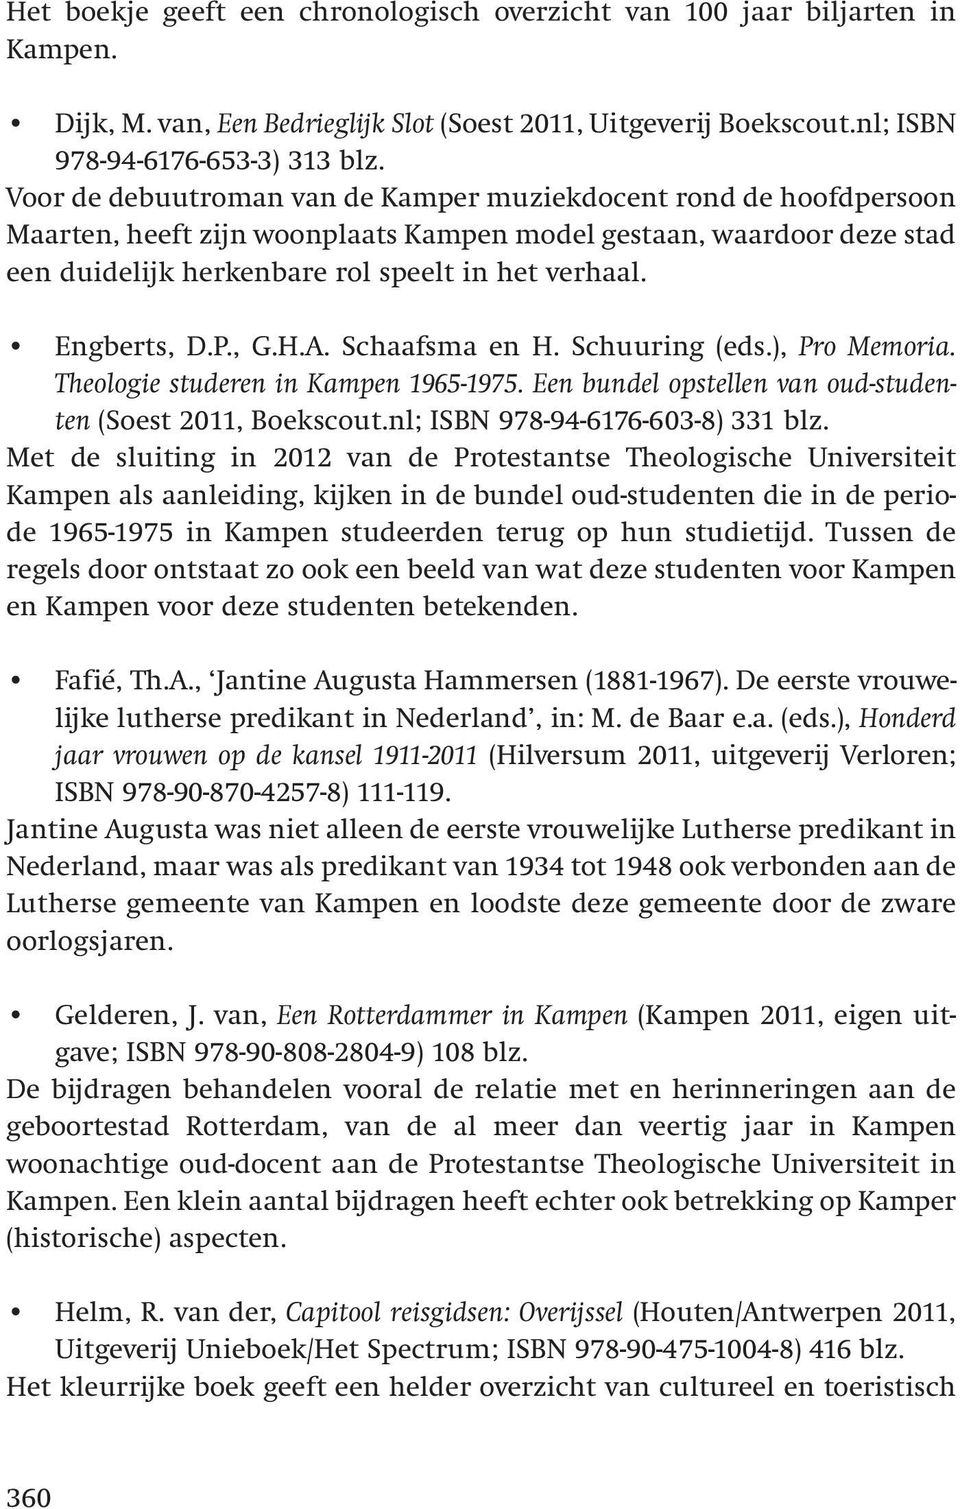 Engberts, D.P., G.H.A. Schaafsma en H. Schuuring (eds.), Pro Memoria. Theologie studeren in Kampen 1965-1975. Een bundel opstellen van oud-studenten (Soest 2011, Boekscout.